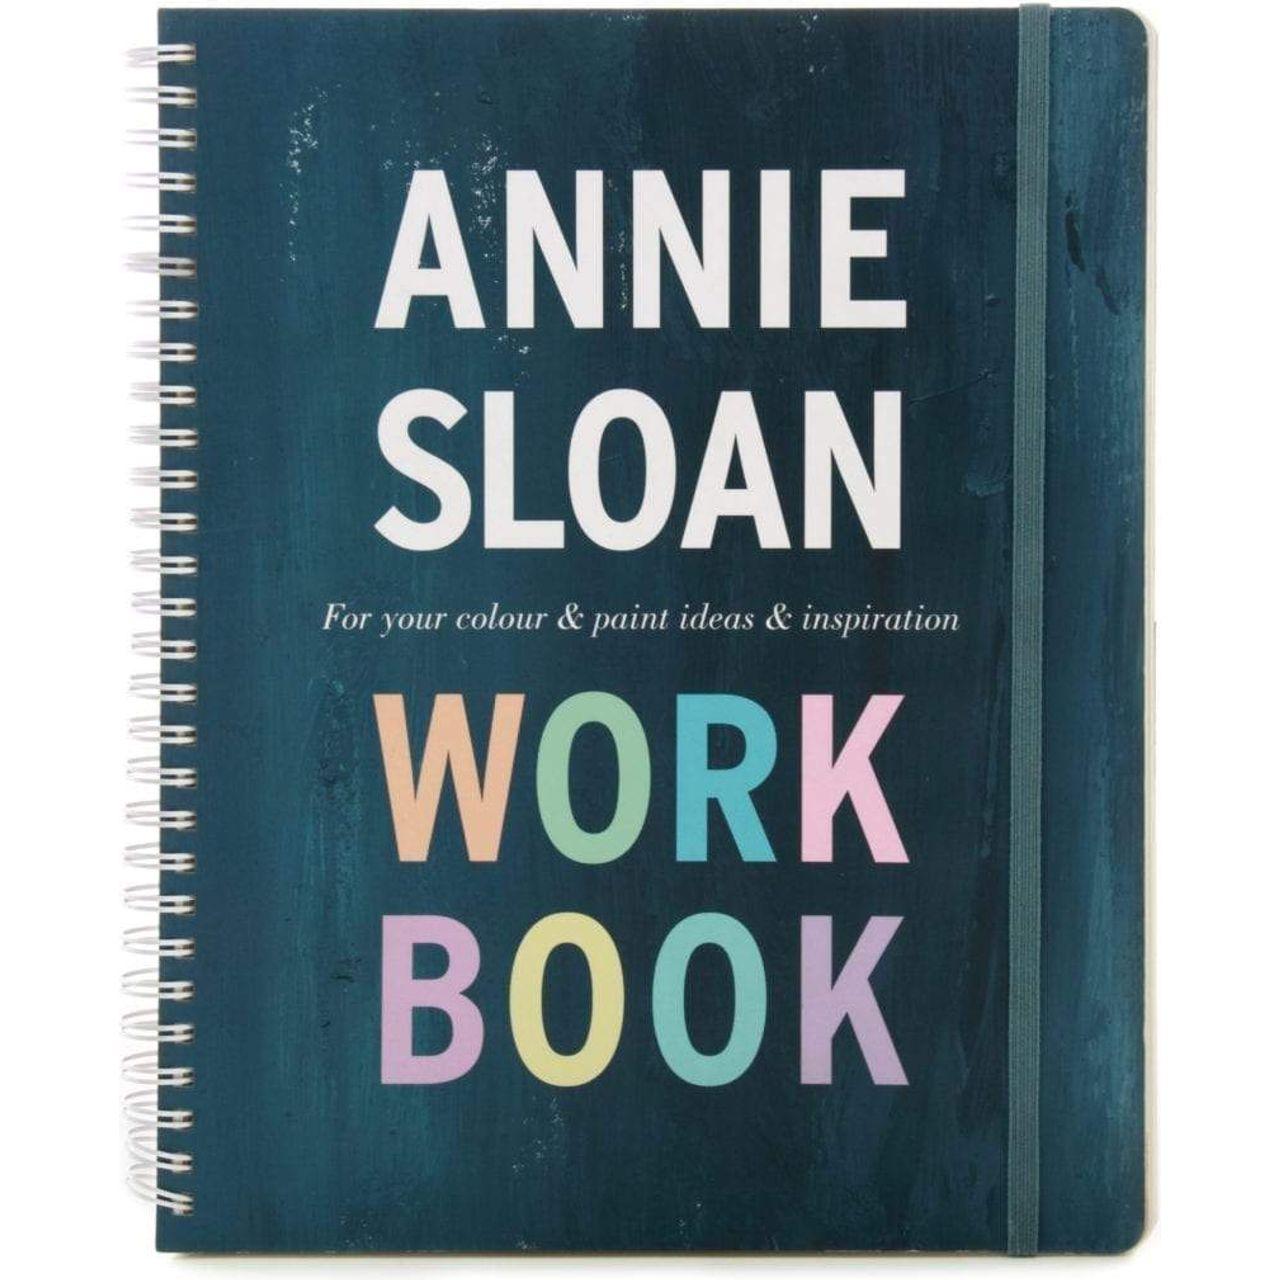 ANNIE SLOAN WORKBOOK